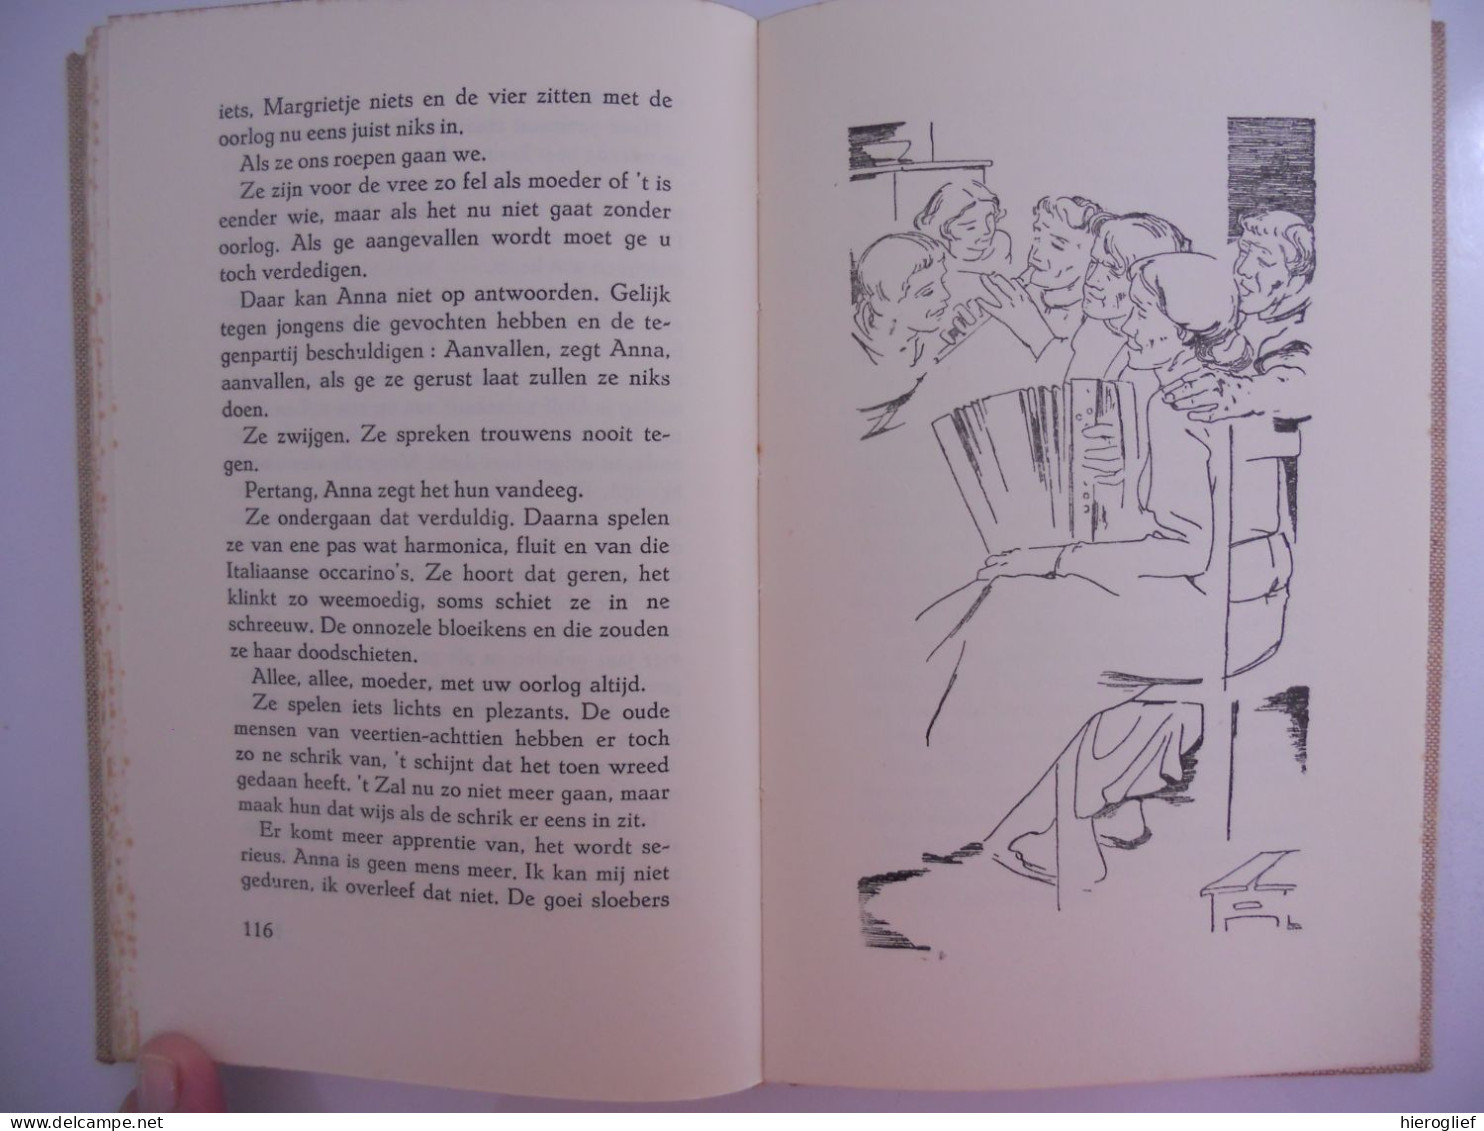 MOEDER door Gerard baron Walschap ° Londerzeel + Antwerpen Vlaams schrijver / 1950 - 1ste DRUK tekeningen Jozef Geerts